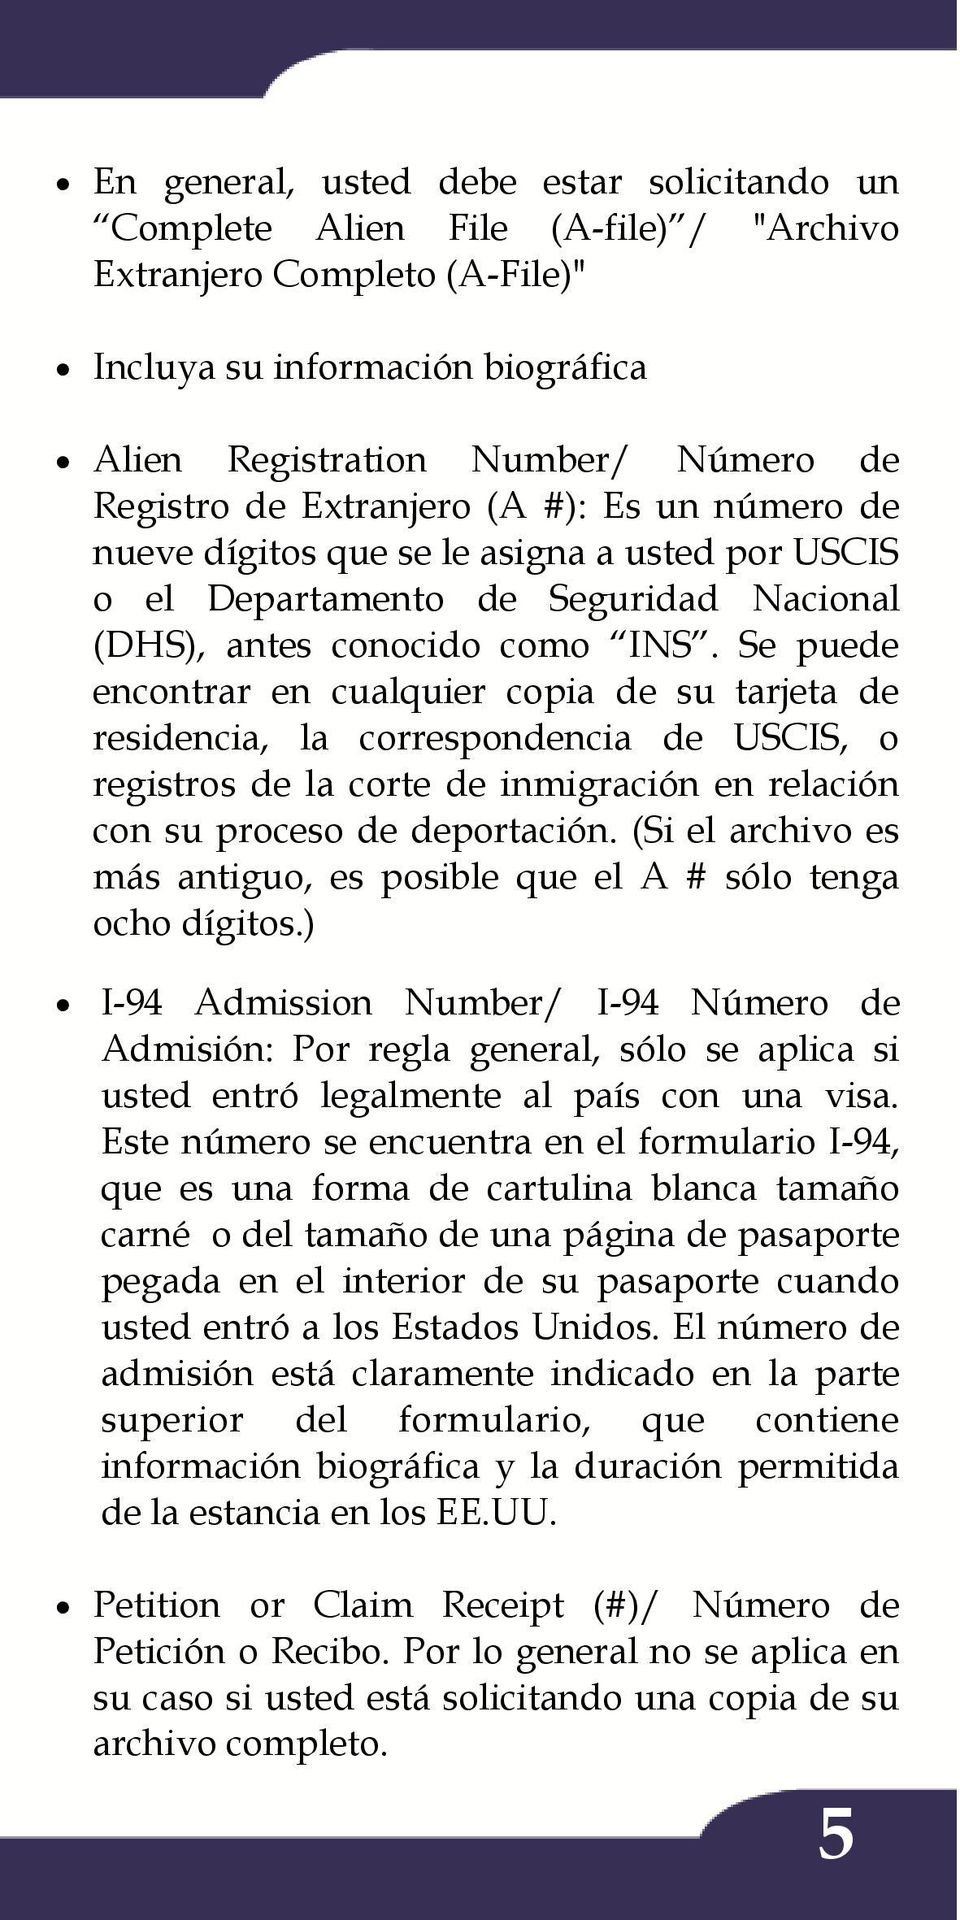 Se puede encontrar en cualquier copia de su tarjeta de residencia, la correspondencia de USCIS, o registros de la corte de inmigración en relación con su proceso de deportación.